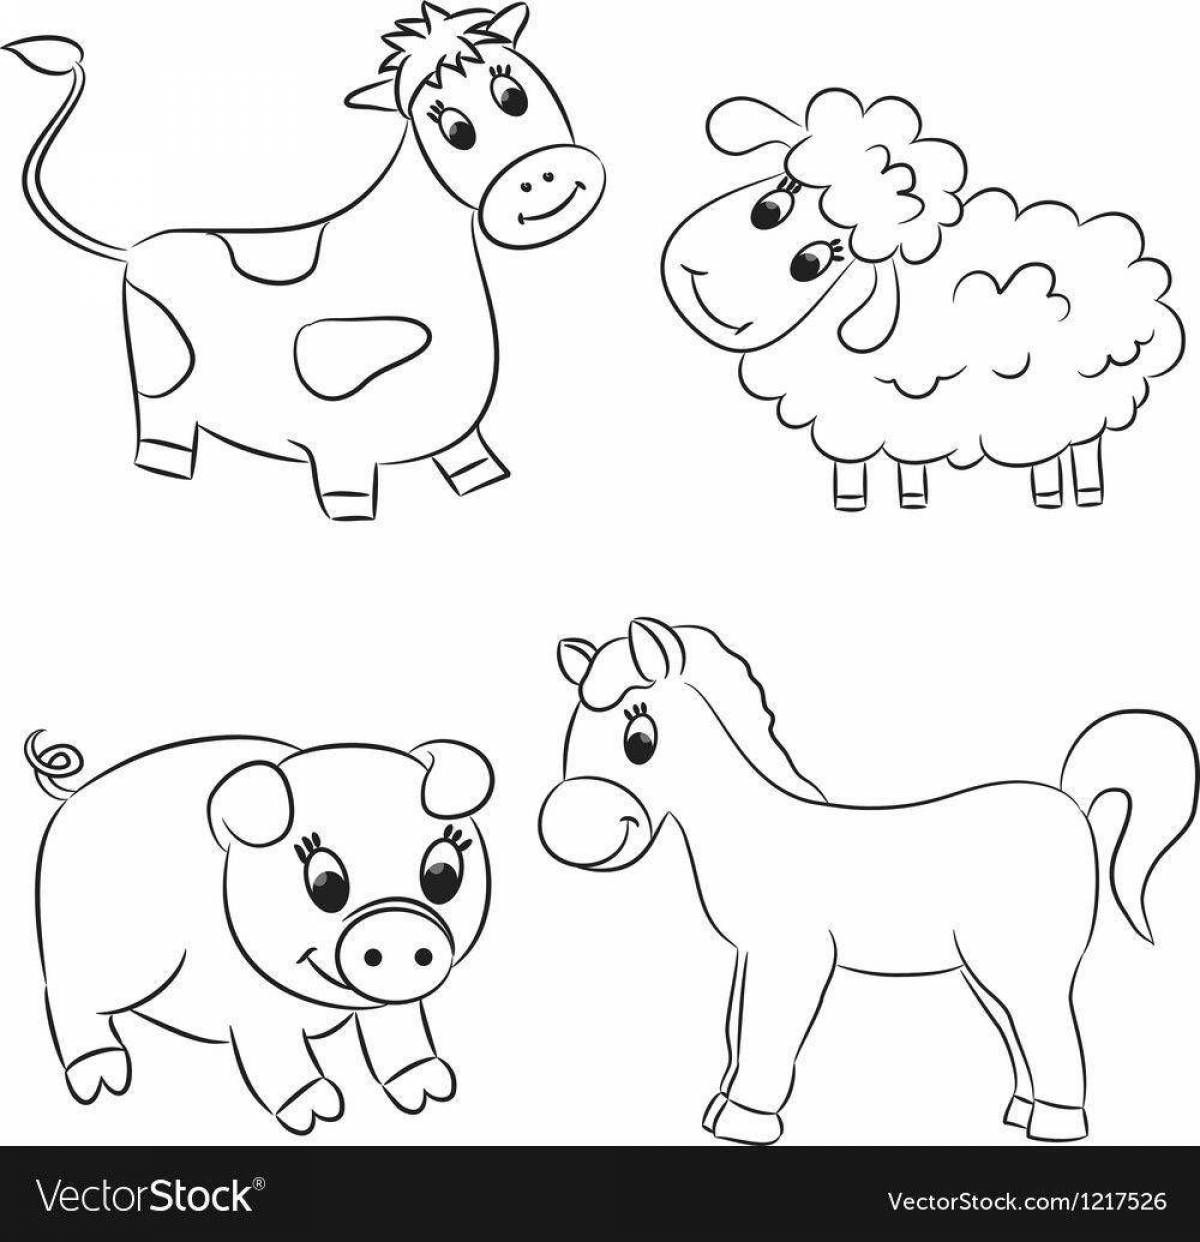 Развлекательные раскраски домашних животных